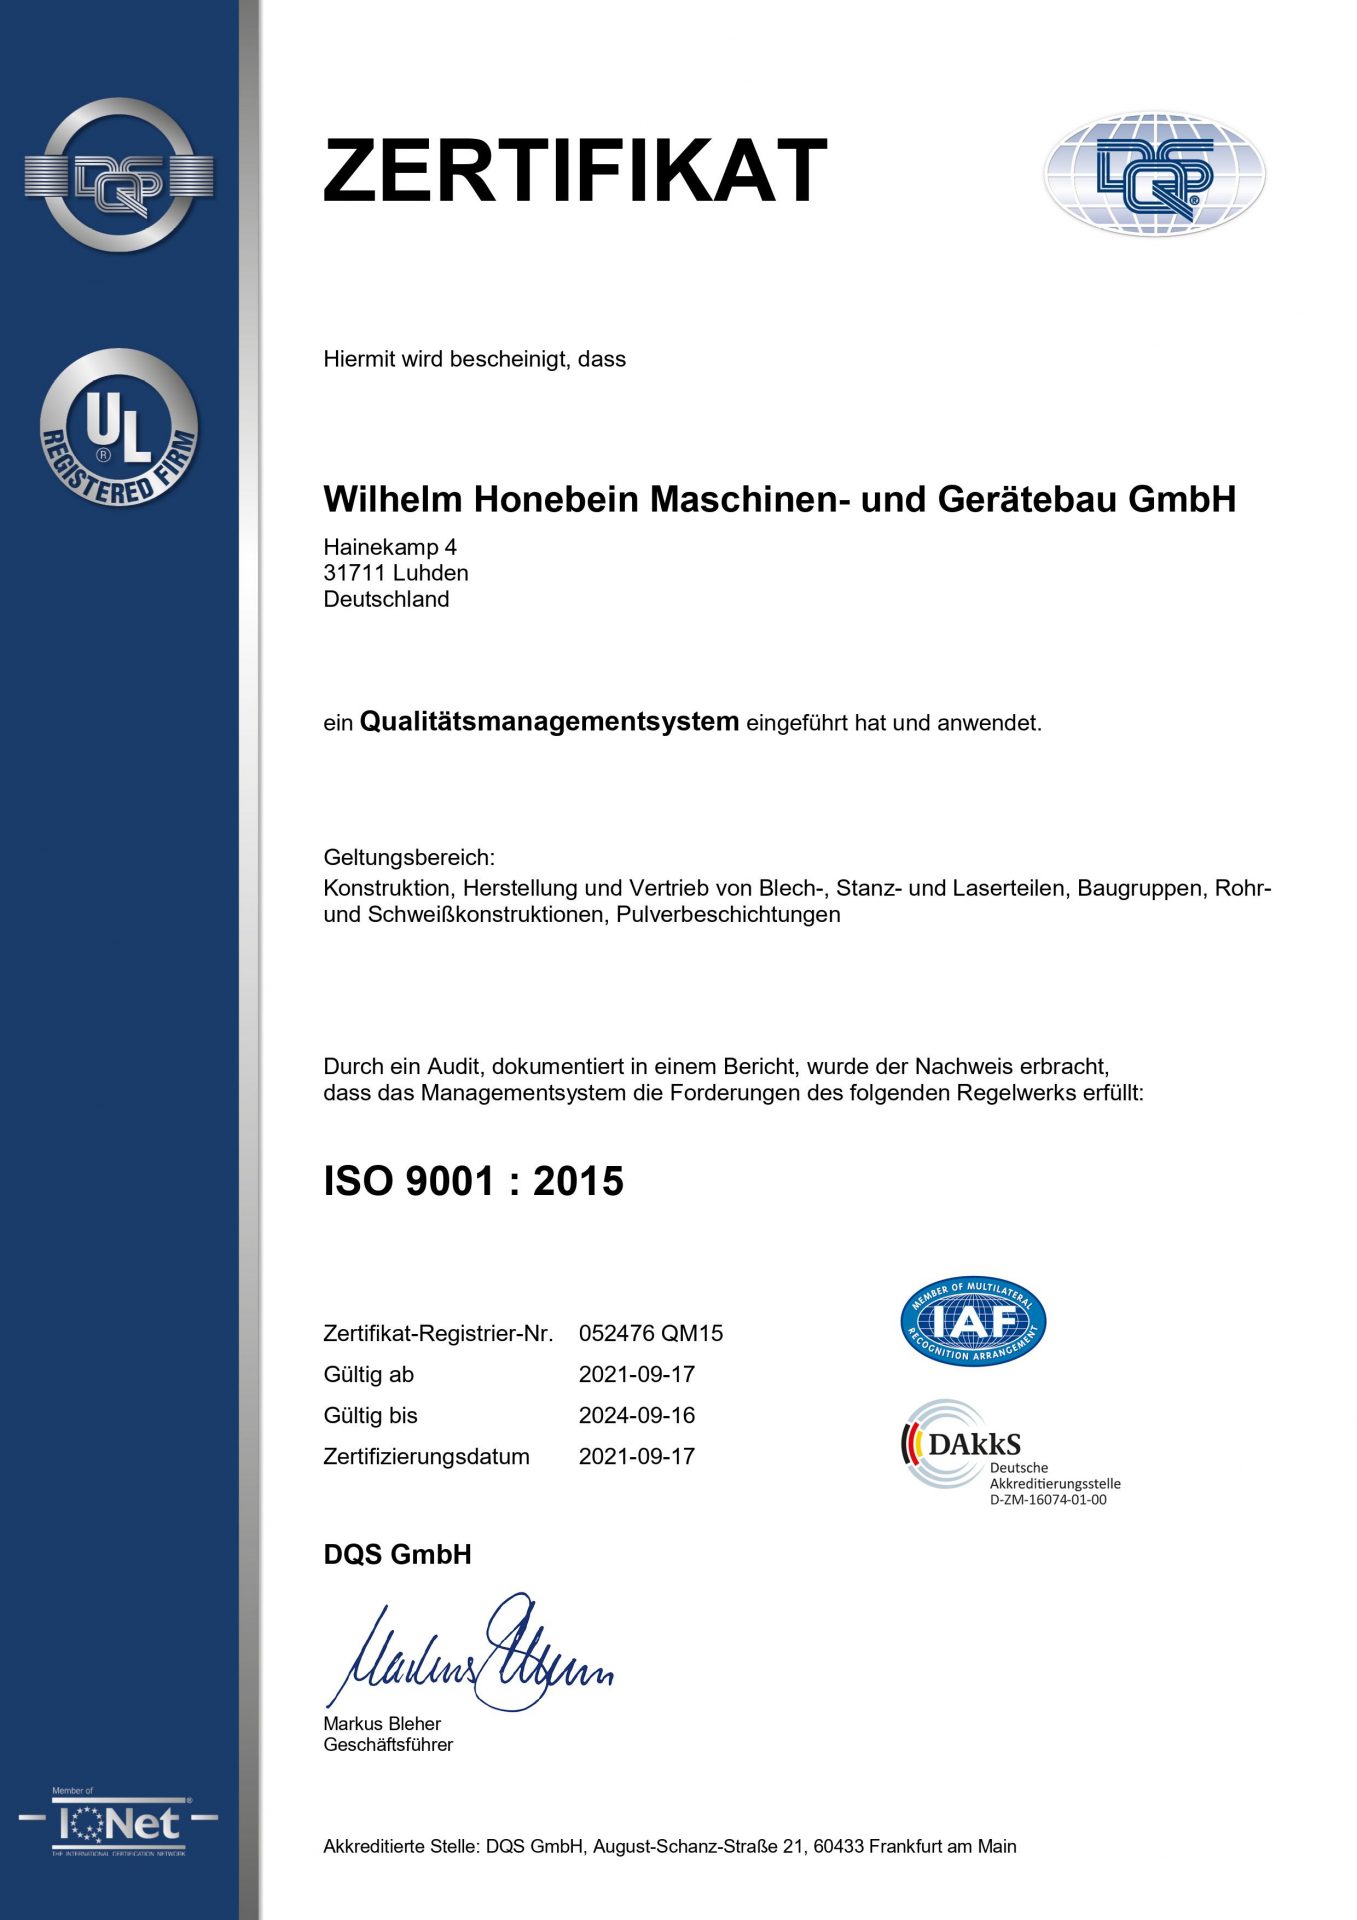 Zertifiziertes Qualitätsmanagement gemäß DIN EN ISO 9001:2015